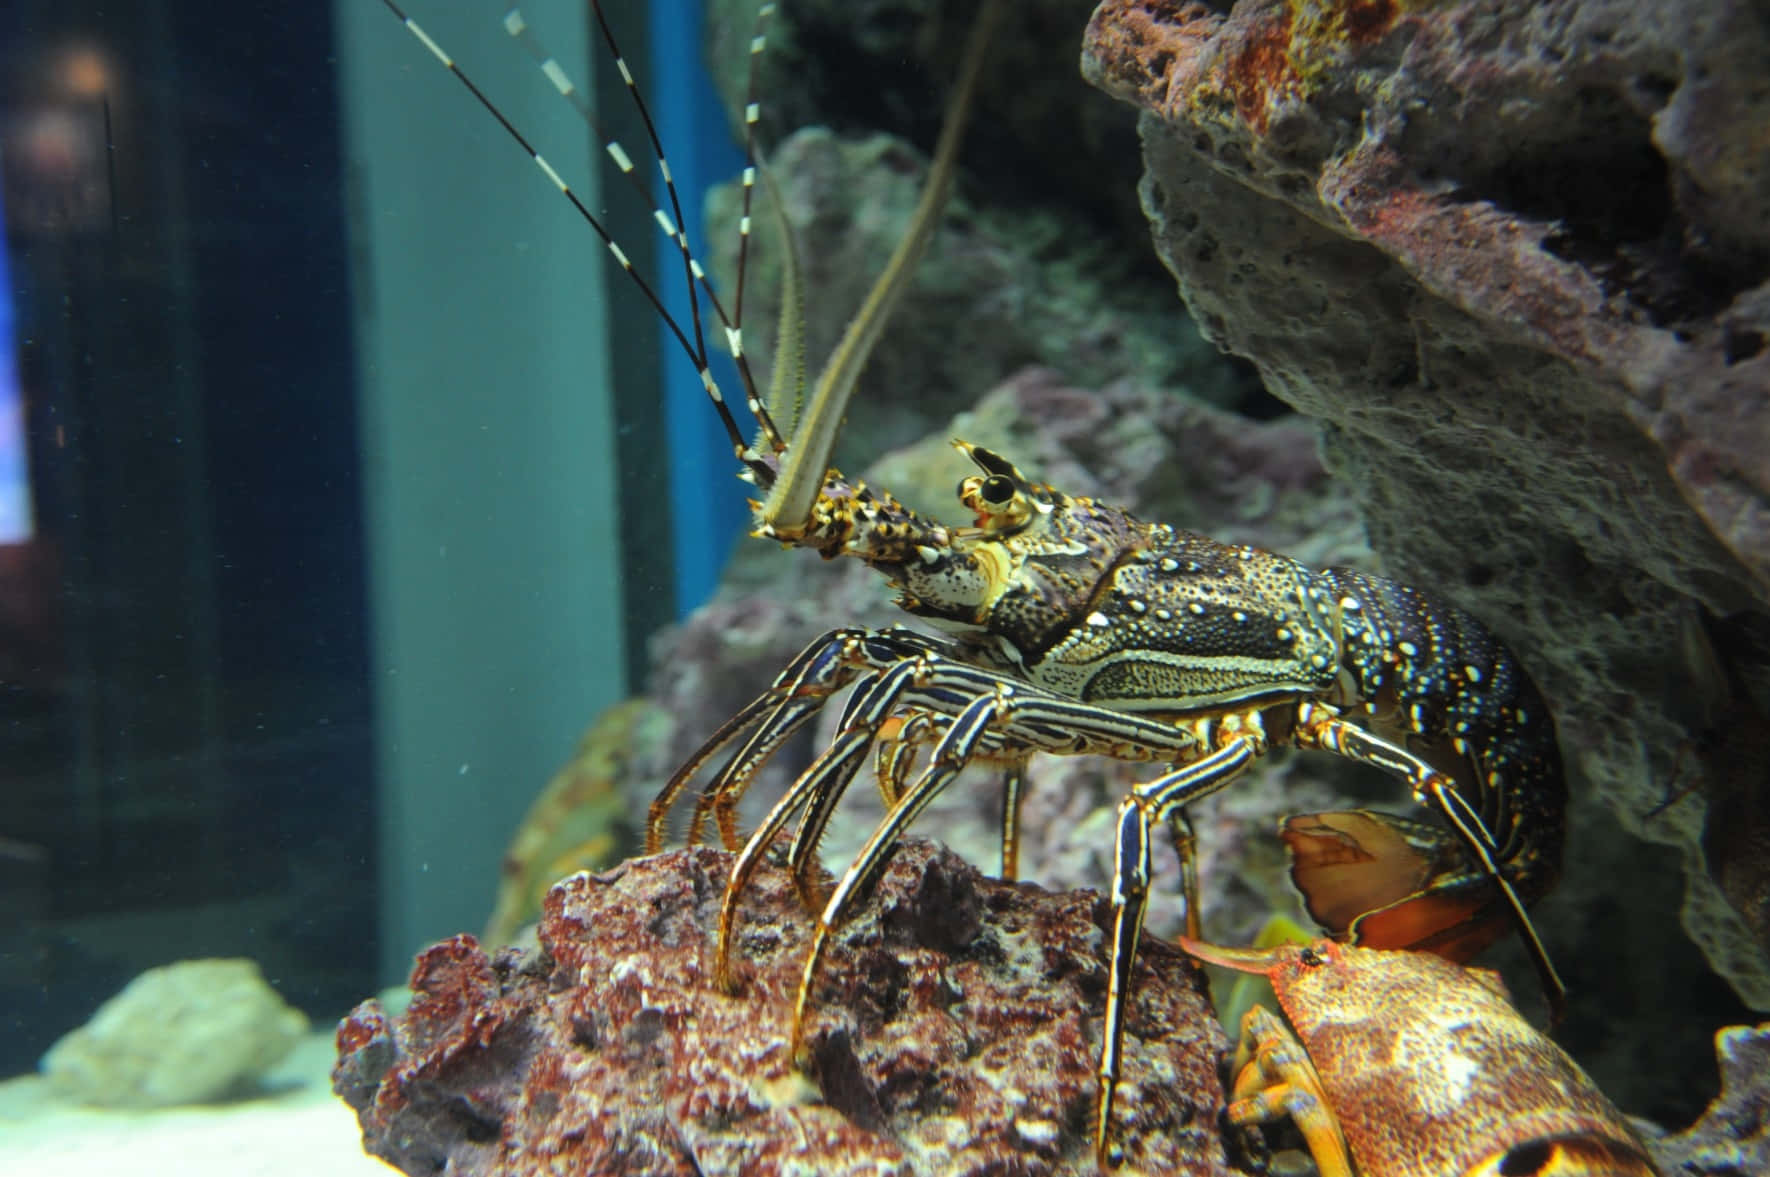 Spiny Lobster Aquarium Display Wallpaper